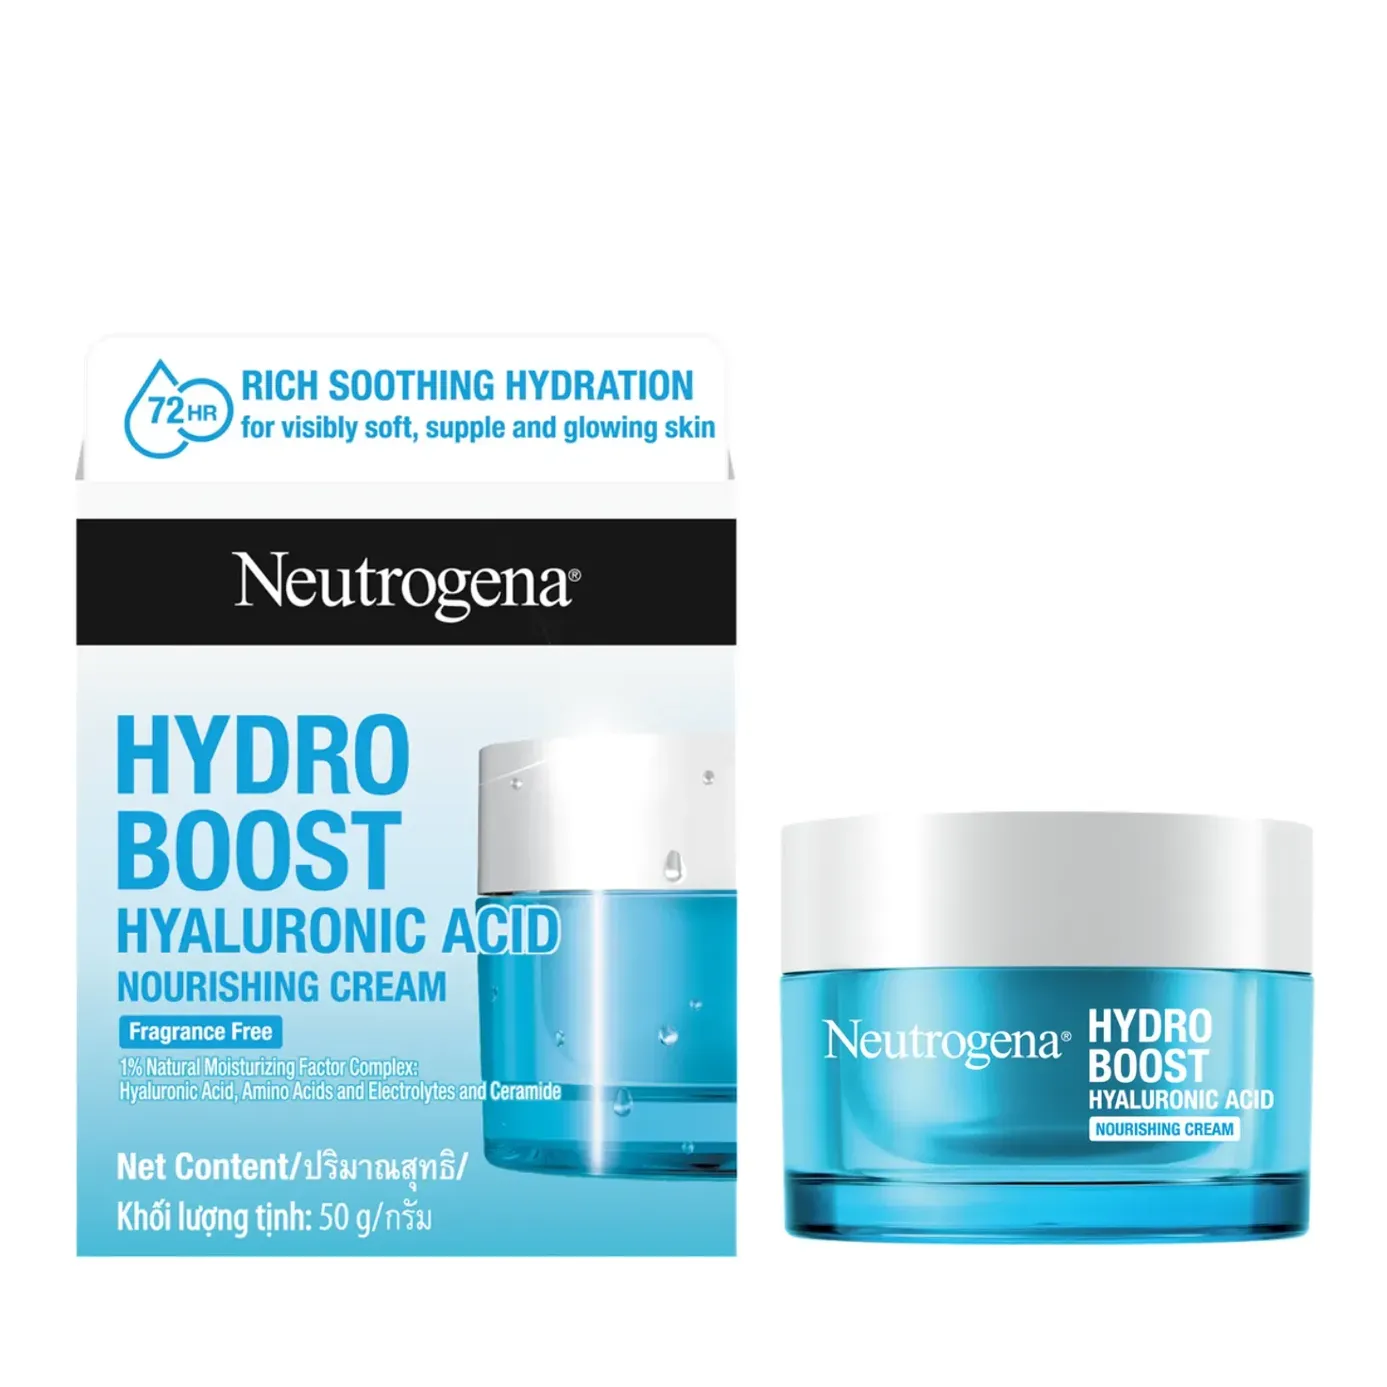 Kem dưỡng ẩm Neutrogena Hydro Boost Gel Cream